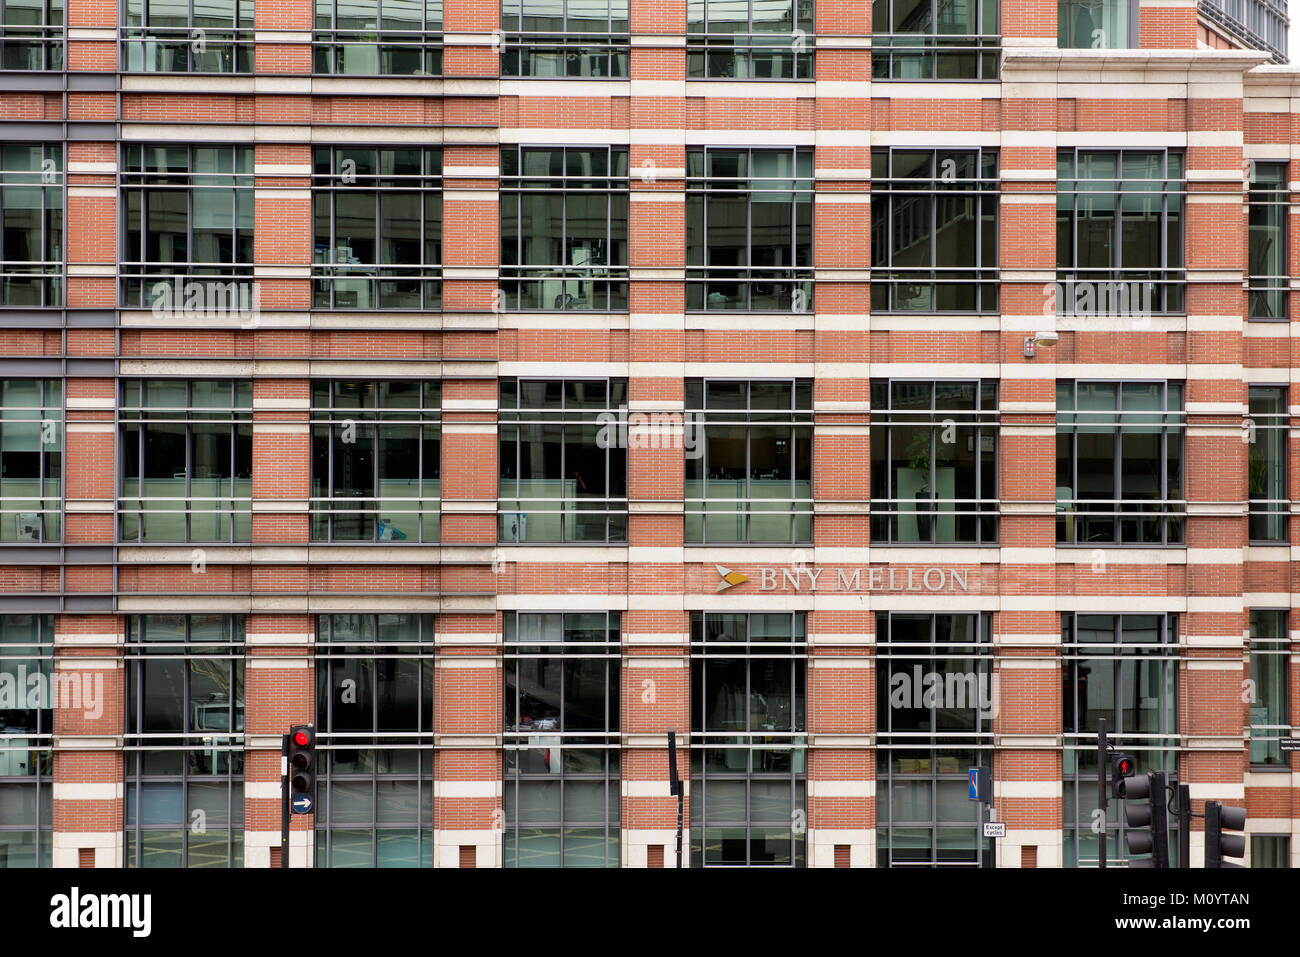 Detalle del BNY Mellon, edificio de oficinas en Londres Foto de stock